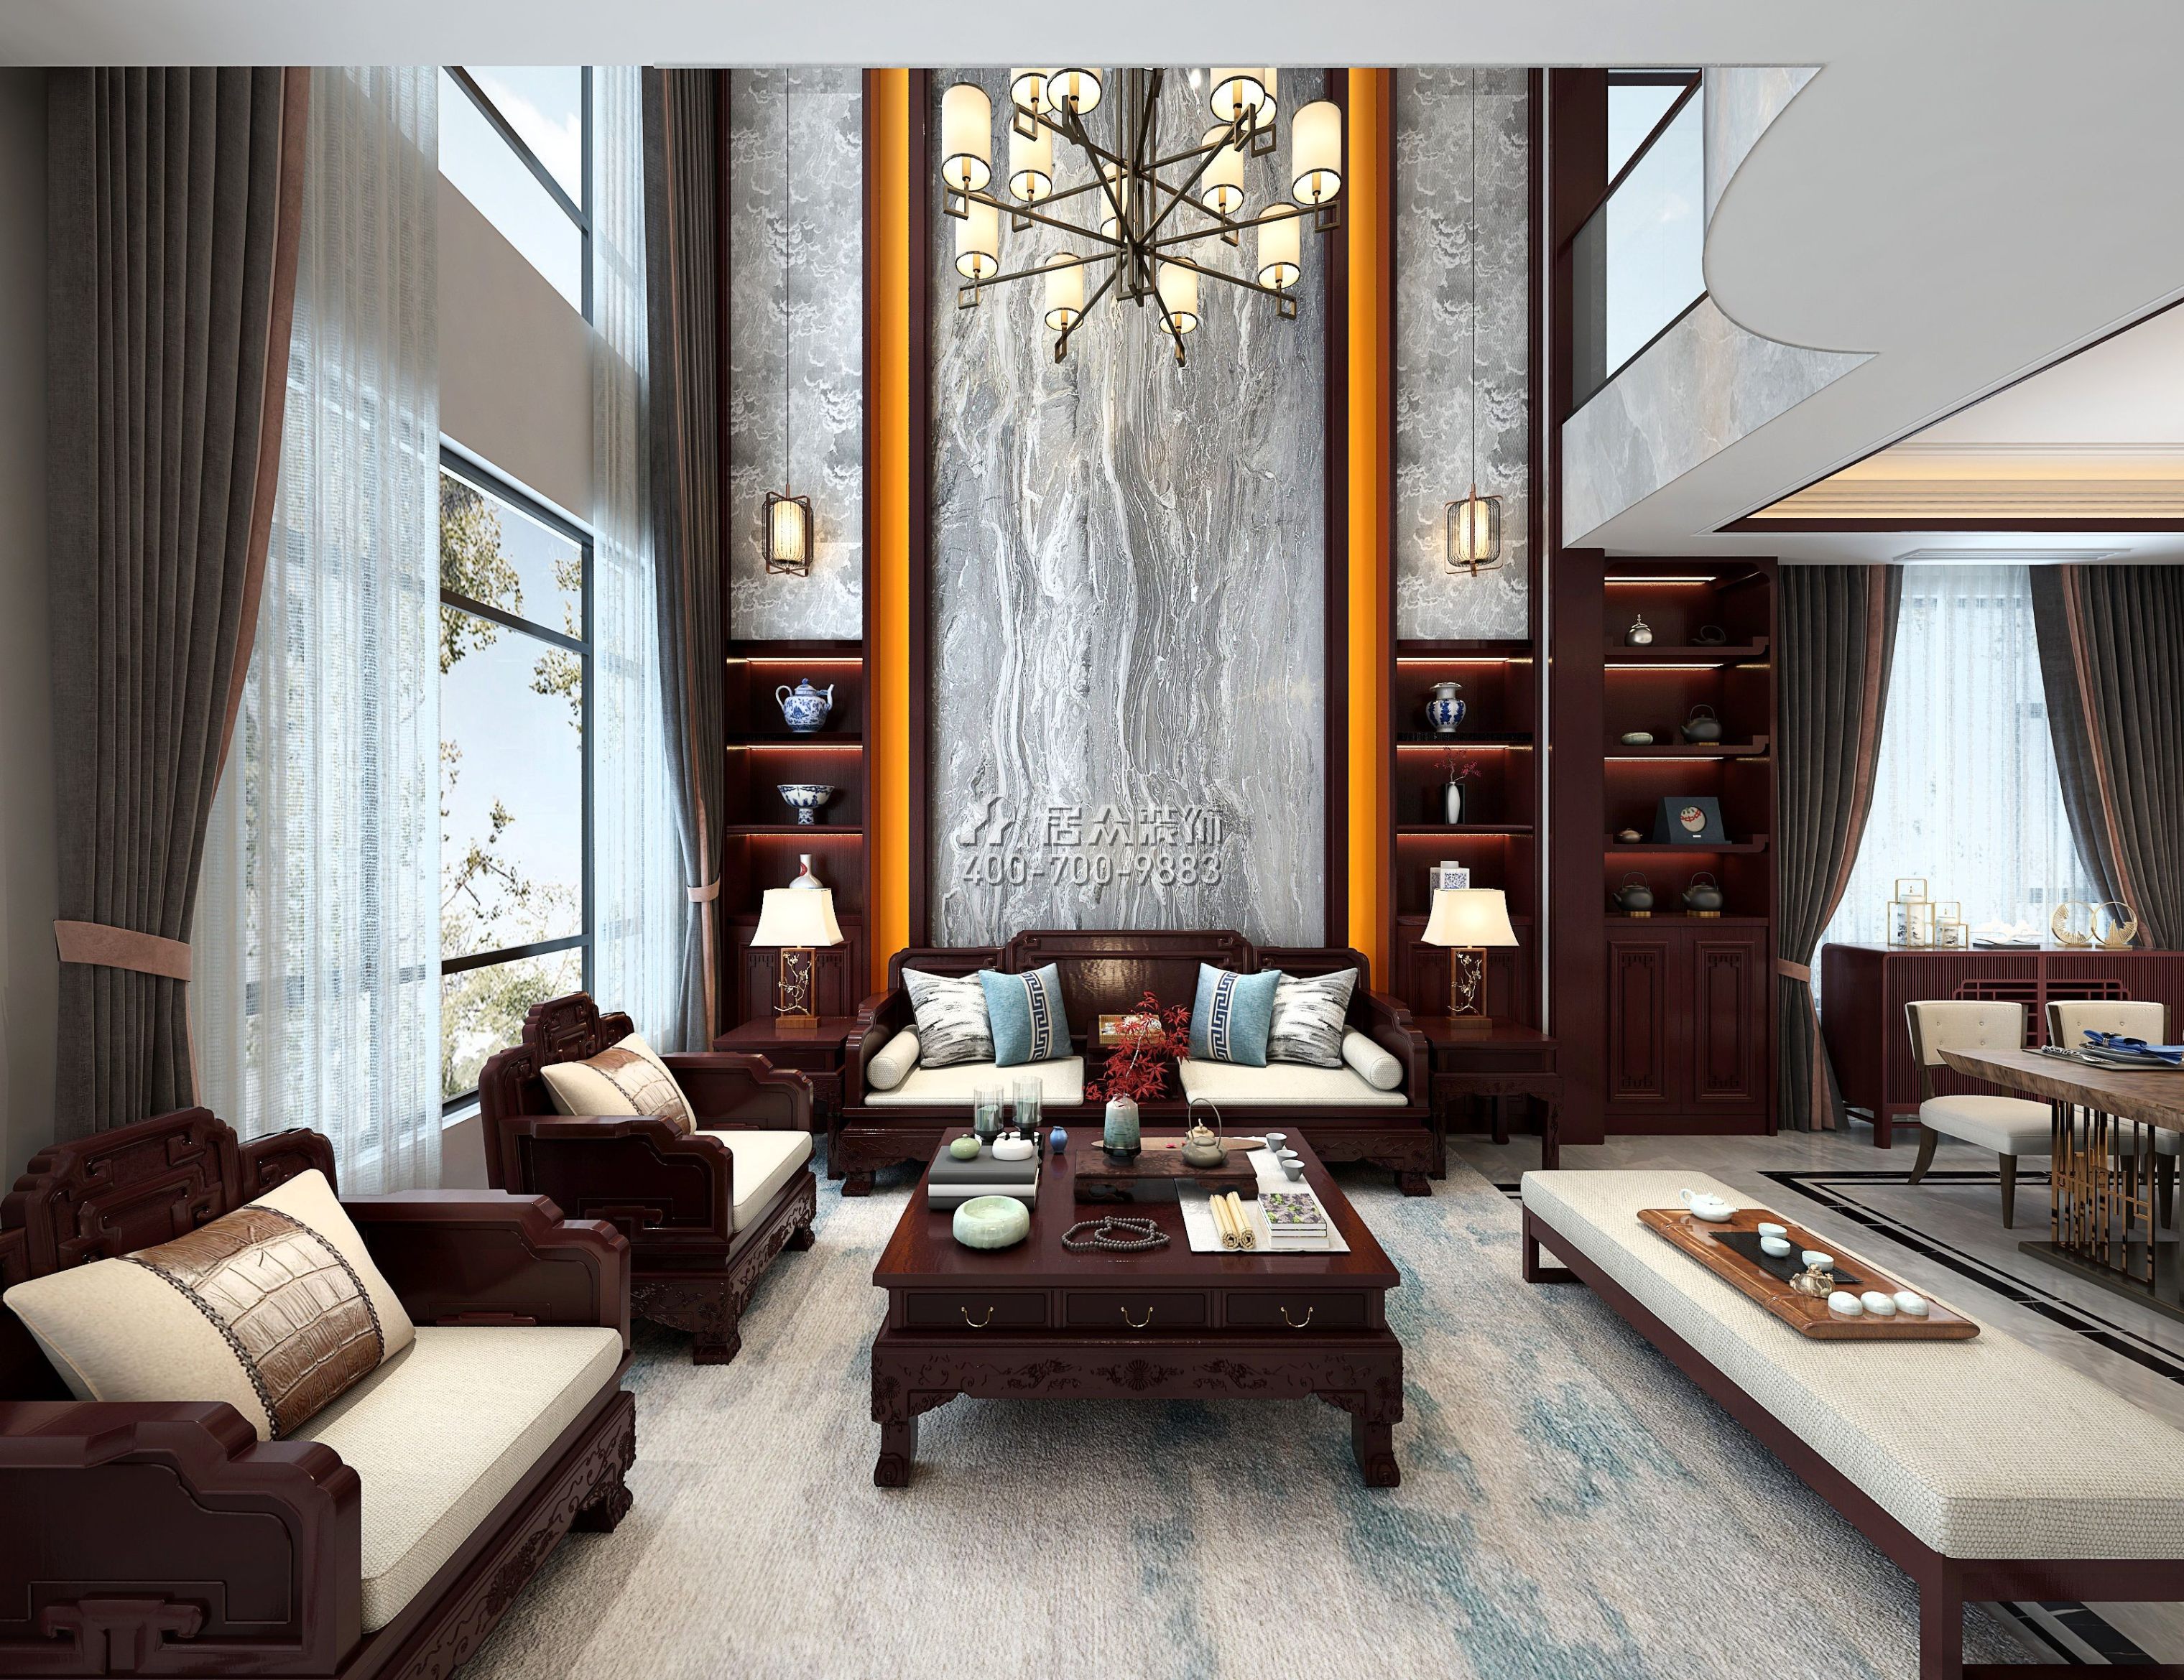 天鹅湾3期450平方米中式风格别墅户型客厅装修效果图